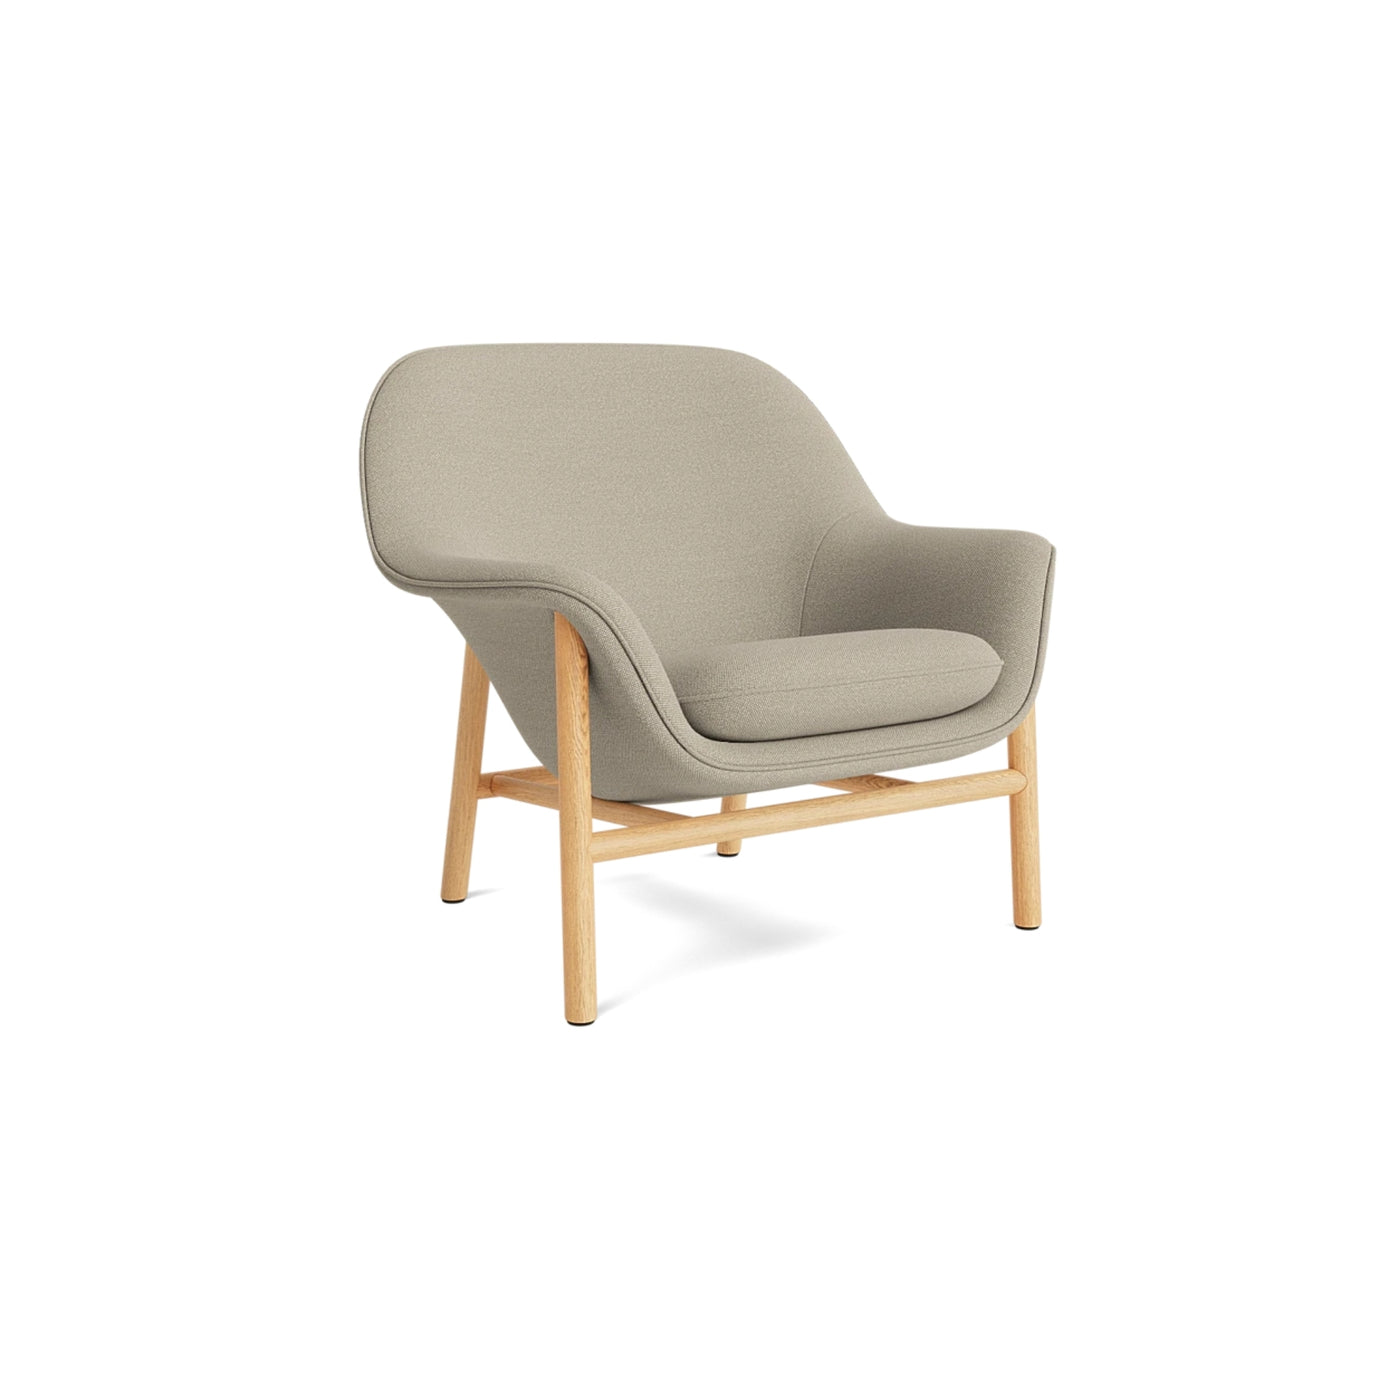 Normann Copenhagen Drape Lounge Chair at someday designs. #colour_hallingdal-220